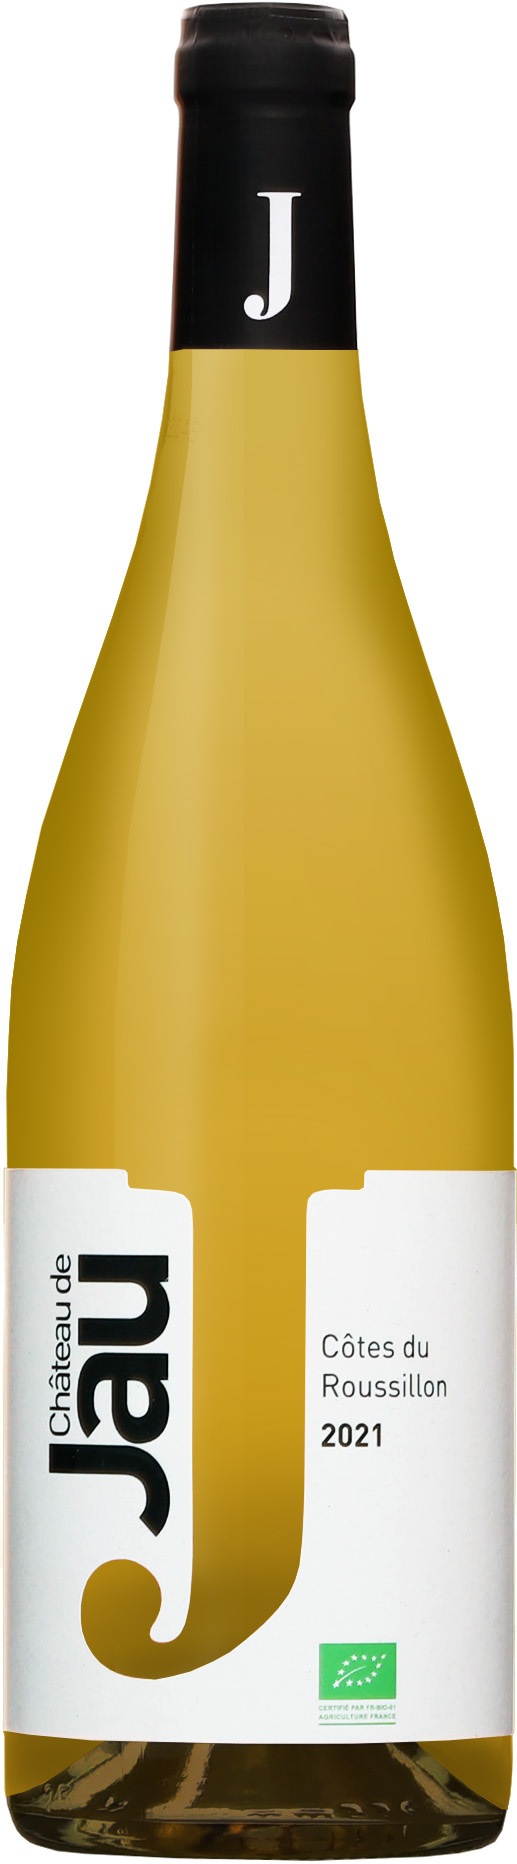 Chateau de Jau Côtes du Roussillon Blanc 2021 13% 0,75l (čistá fľaša)